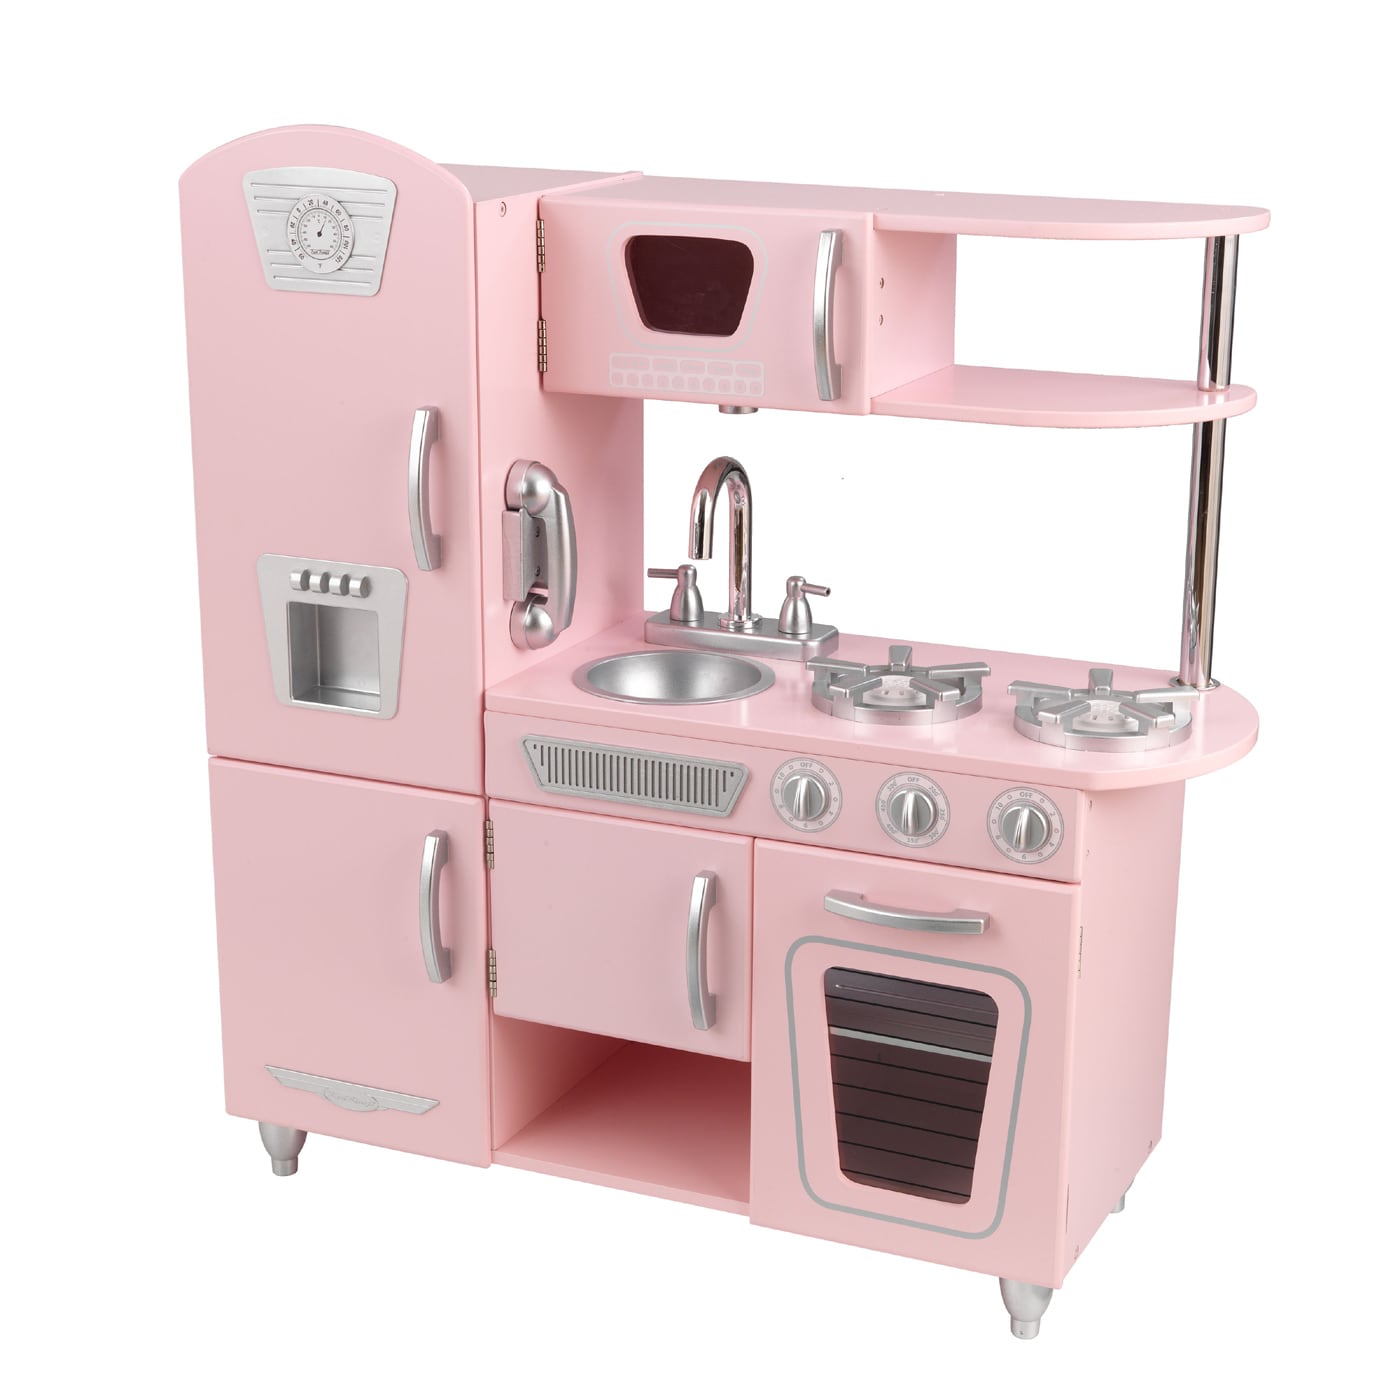 Pink Crockpot!  Pink kitchen, Pink kitchen appliances, Kitchen must haves